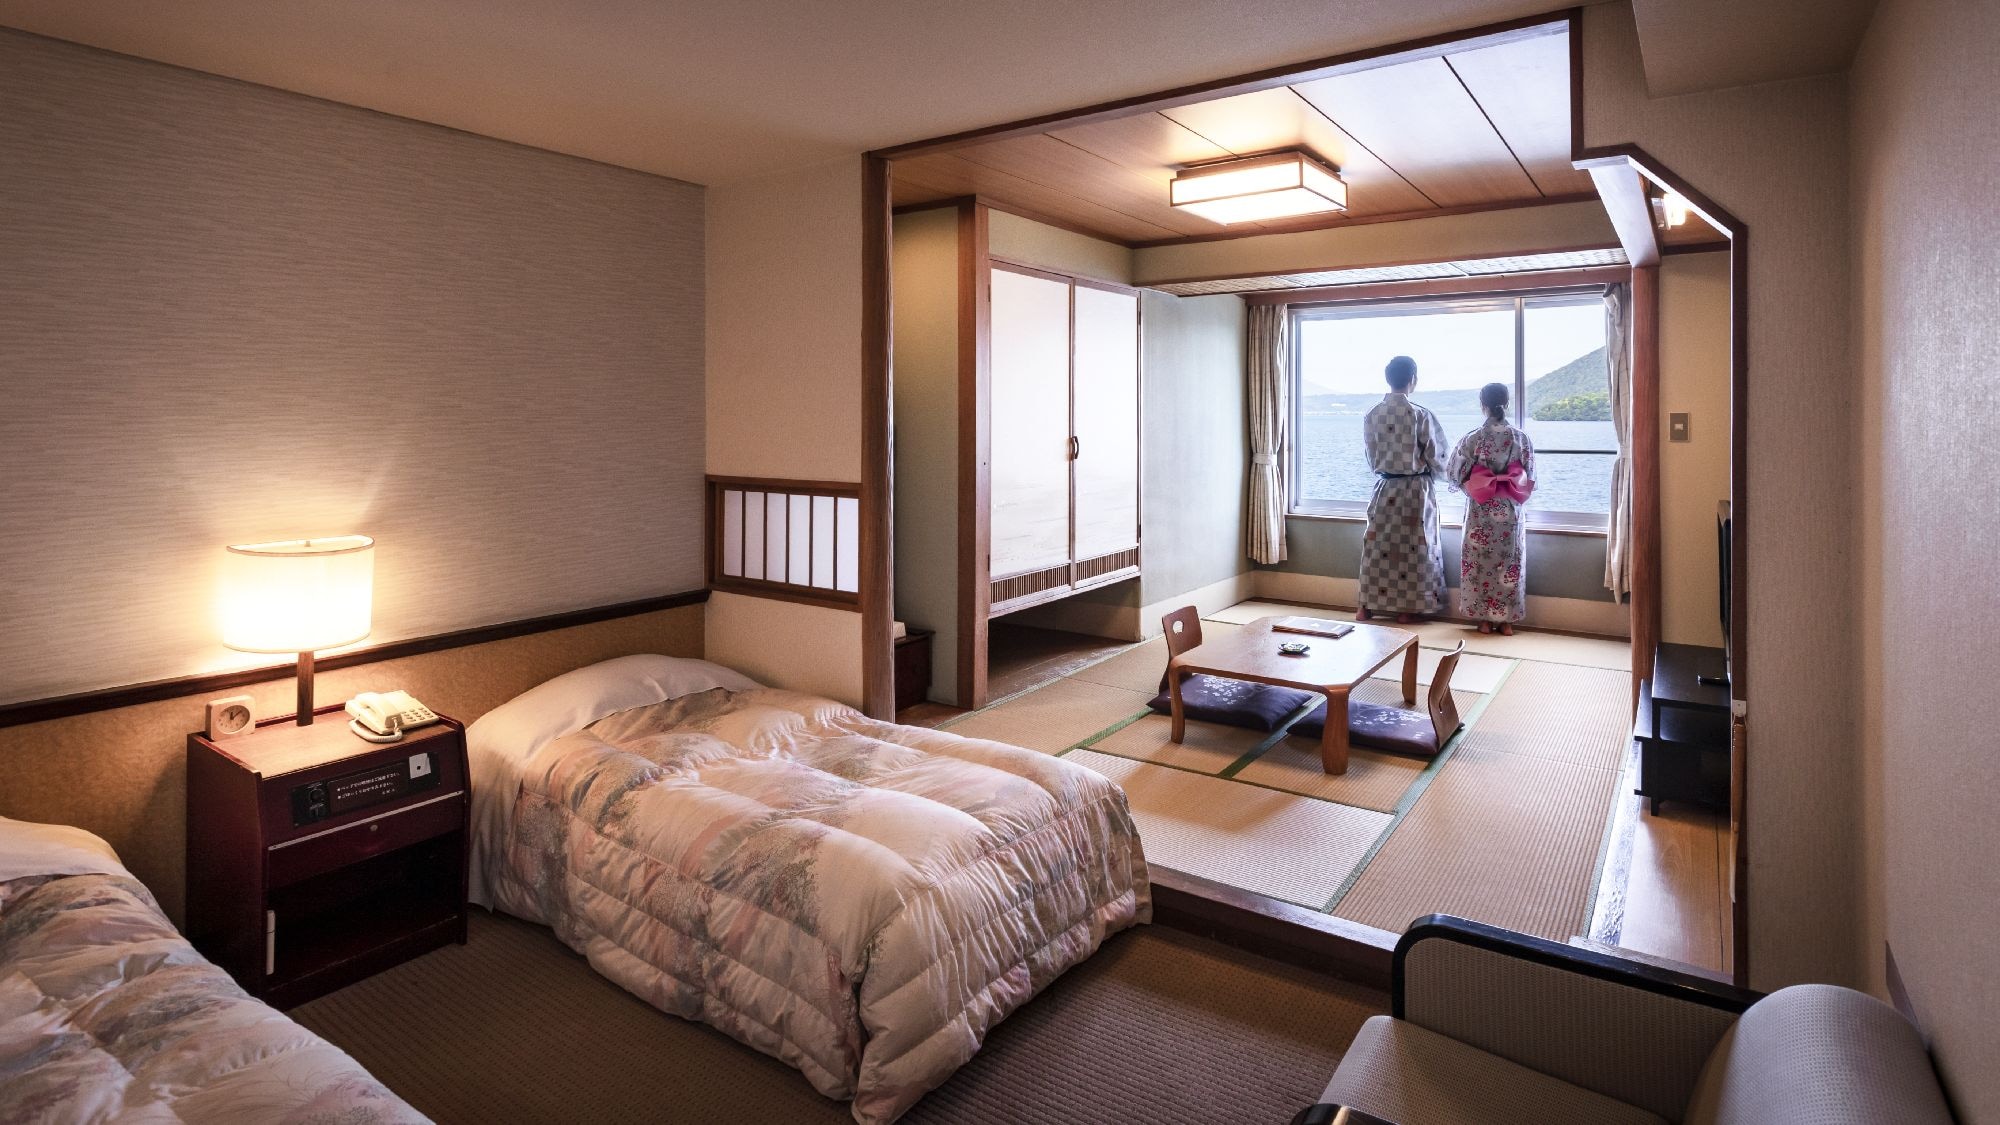 [ห้องสไตล์ญี่ปุ่น-ตะวันตกริมทะเลสาบ] ห้องกว้าง 10 เสื่อทาทามิ